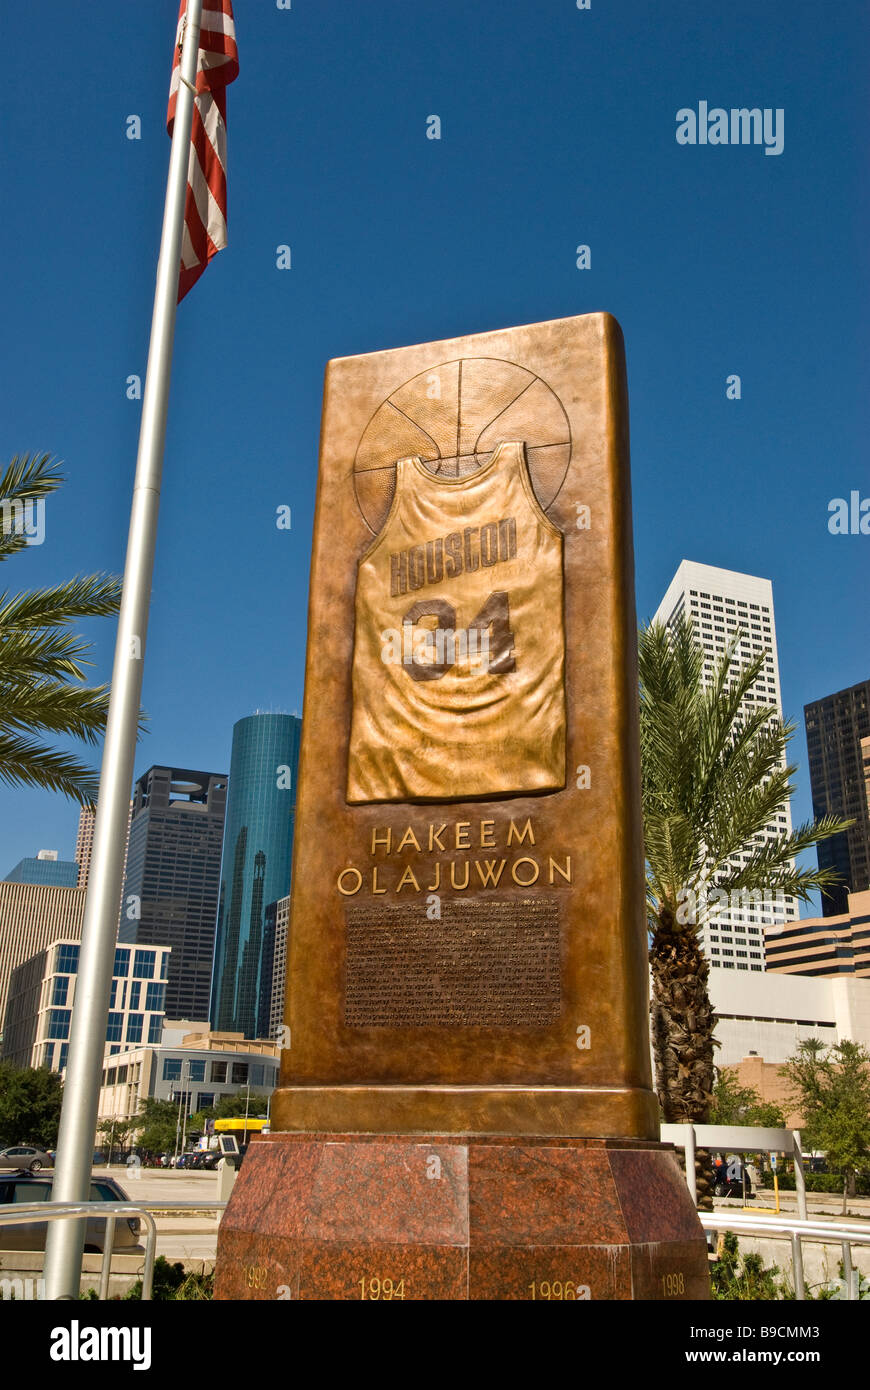 Hakeem Olajuwon Texas Houston Astros NBA Basketball player monumento in bronzo con il n. 34 Jersey city landmark al Toyota Center Foto Stock